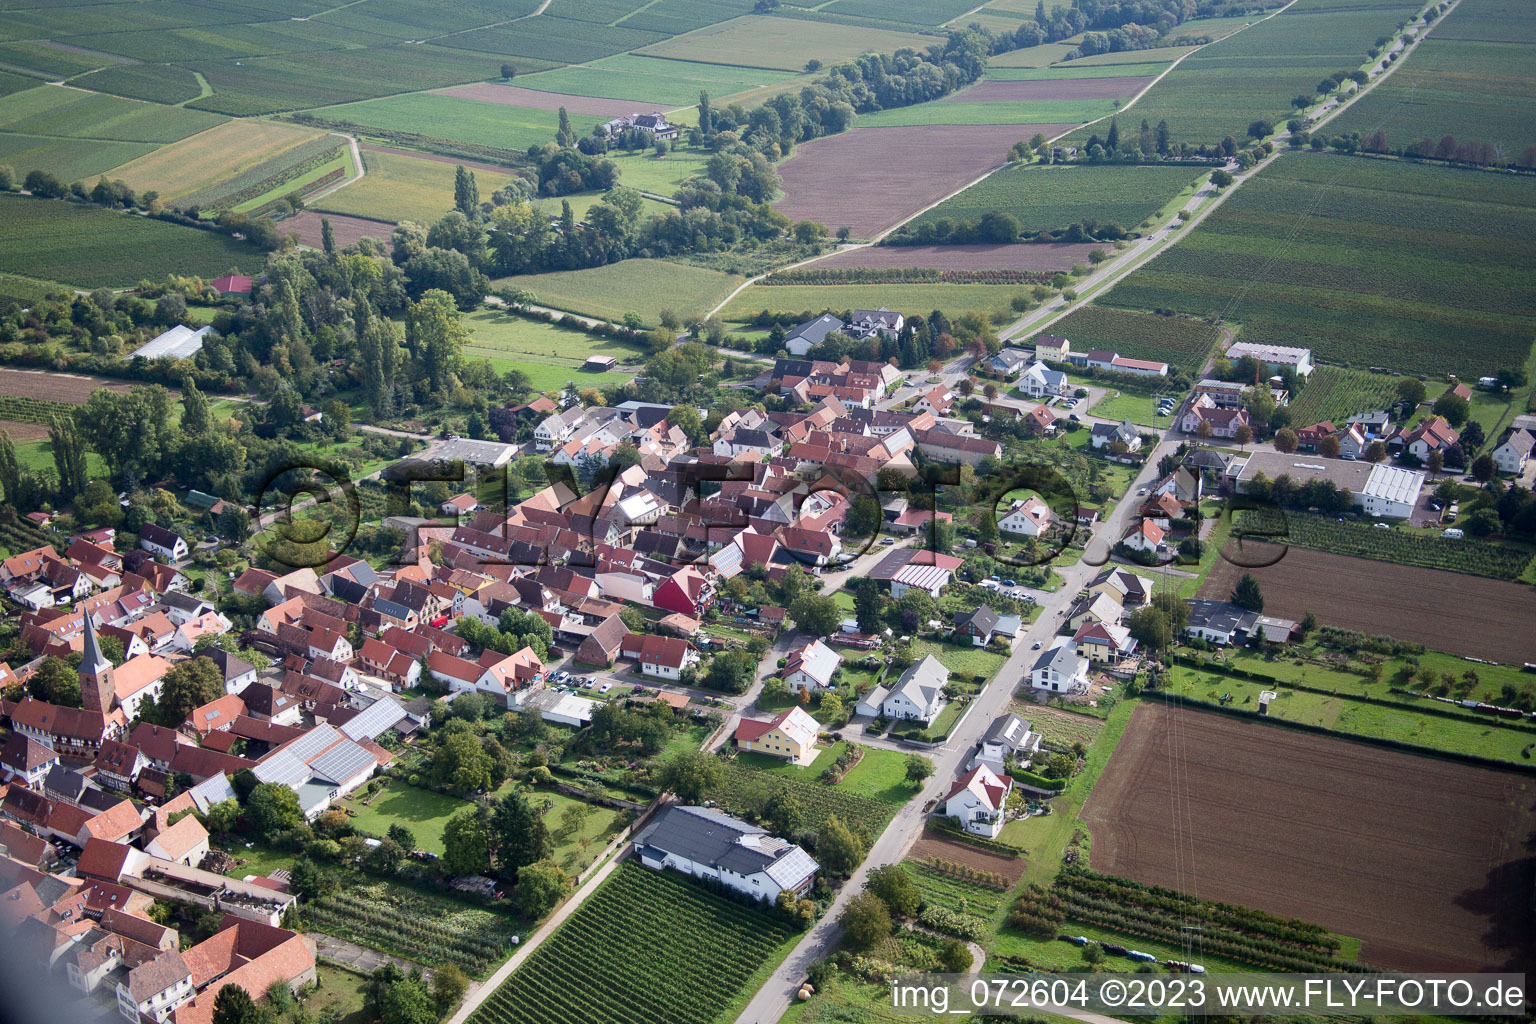 Aerial photograpy of At the parish garden in the district Heuchelheim in Heuchelheim-Klingen in the state Rhineland-Palatinate, Germany